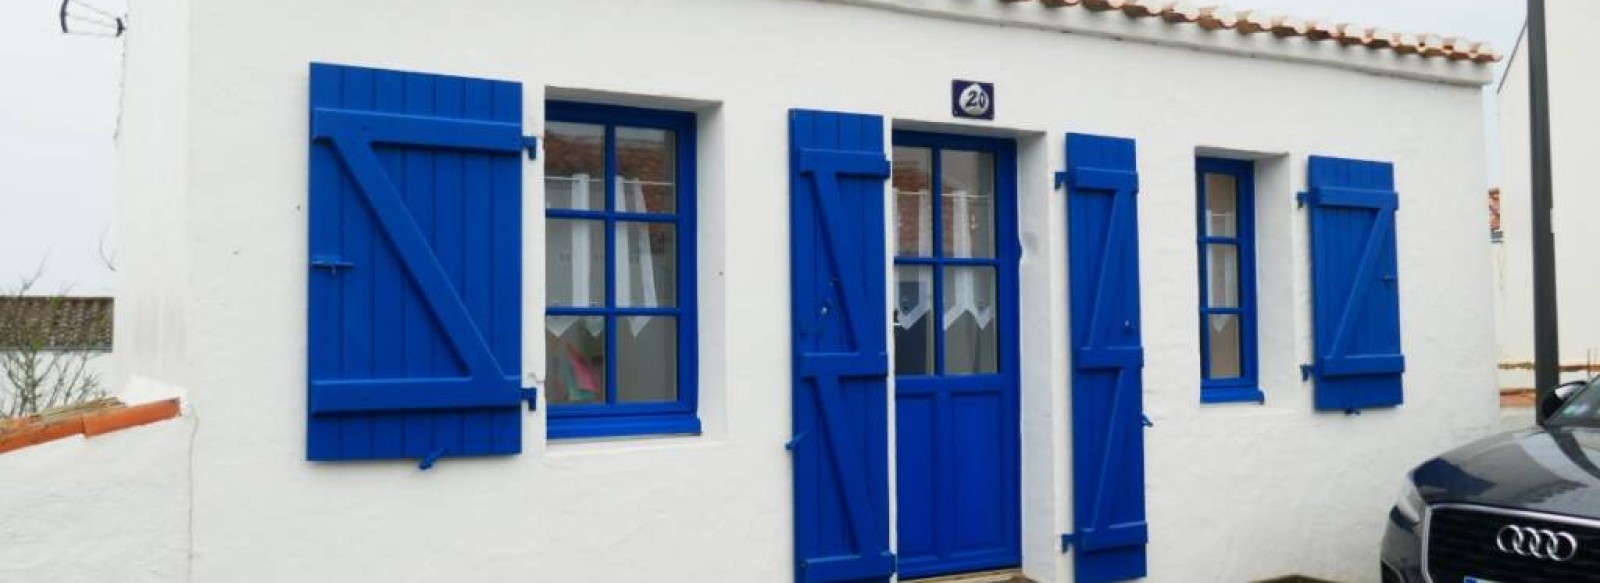 Maison de pecheur renovee dans le quartier pittoresque du Banzeau a Noirmoutier en l'Ile